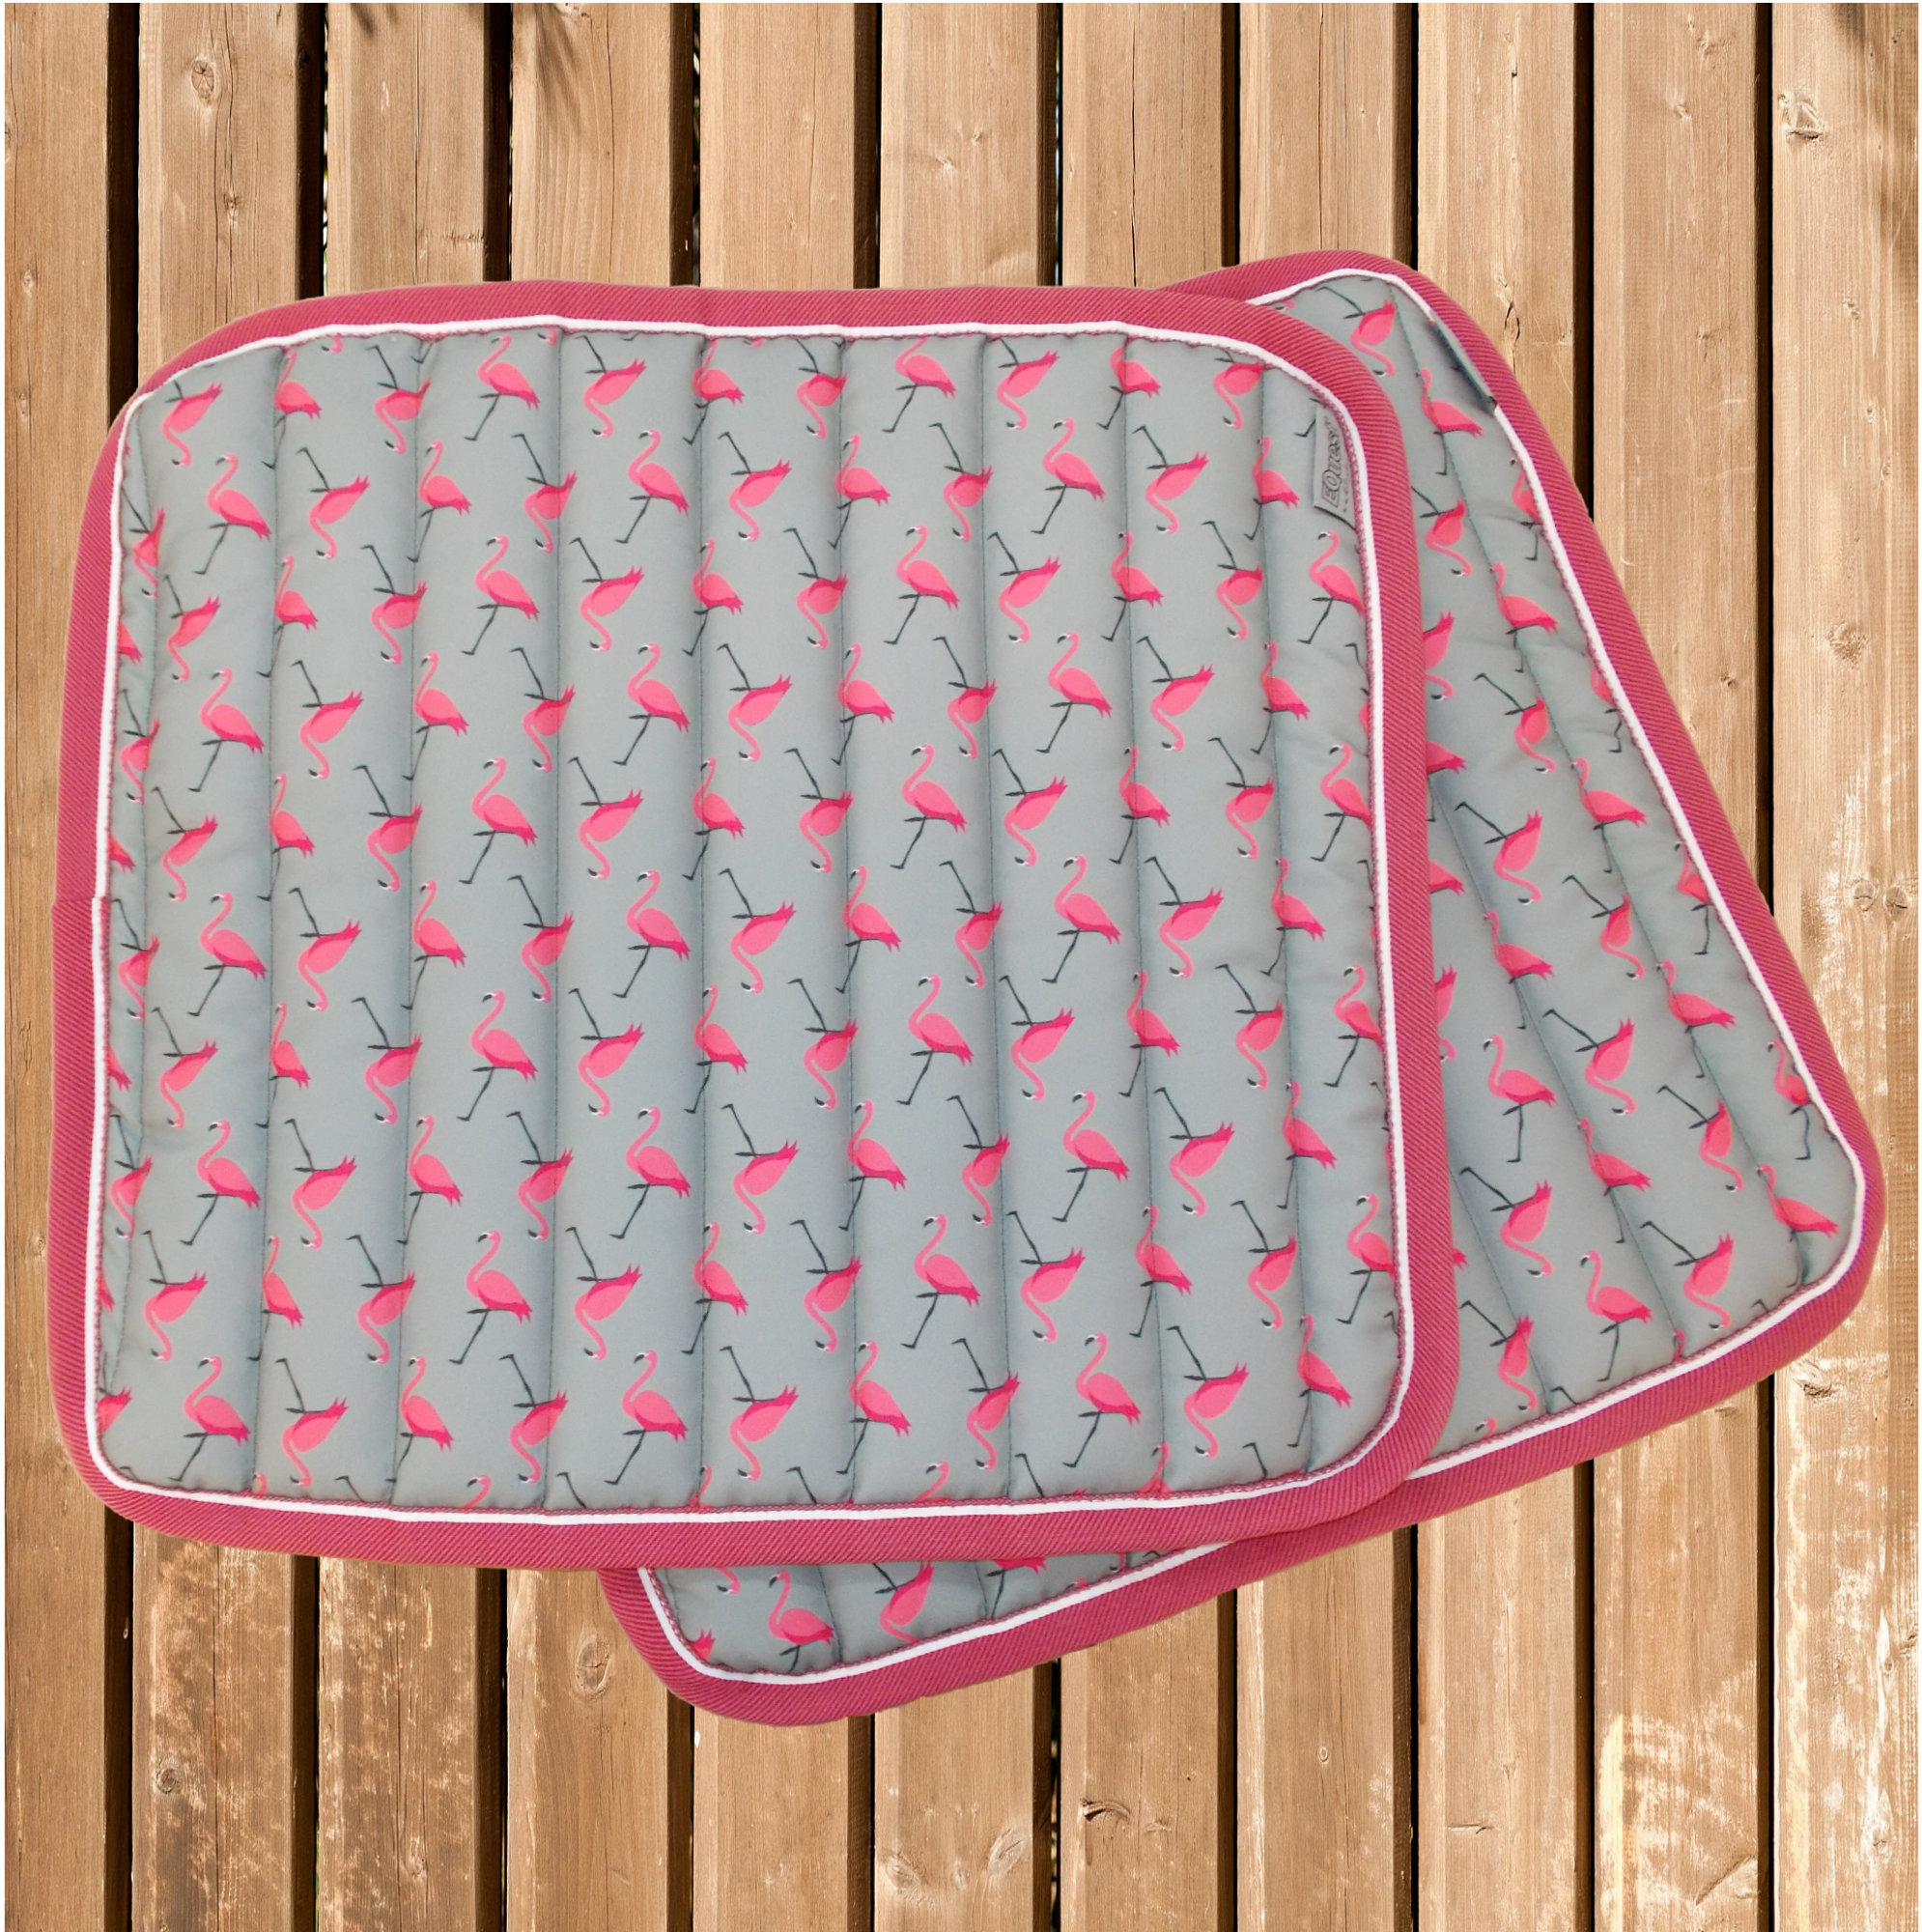 Bandagen Unterlagen Flamingo, Equest Bandagierunterlagen